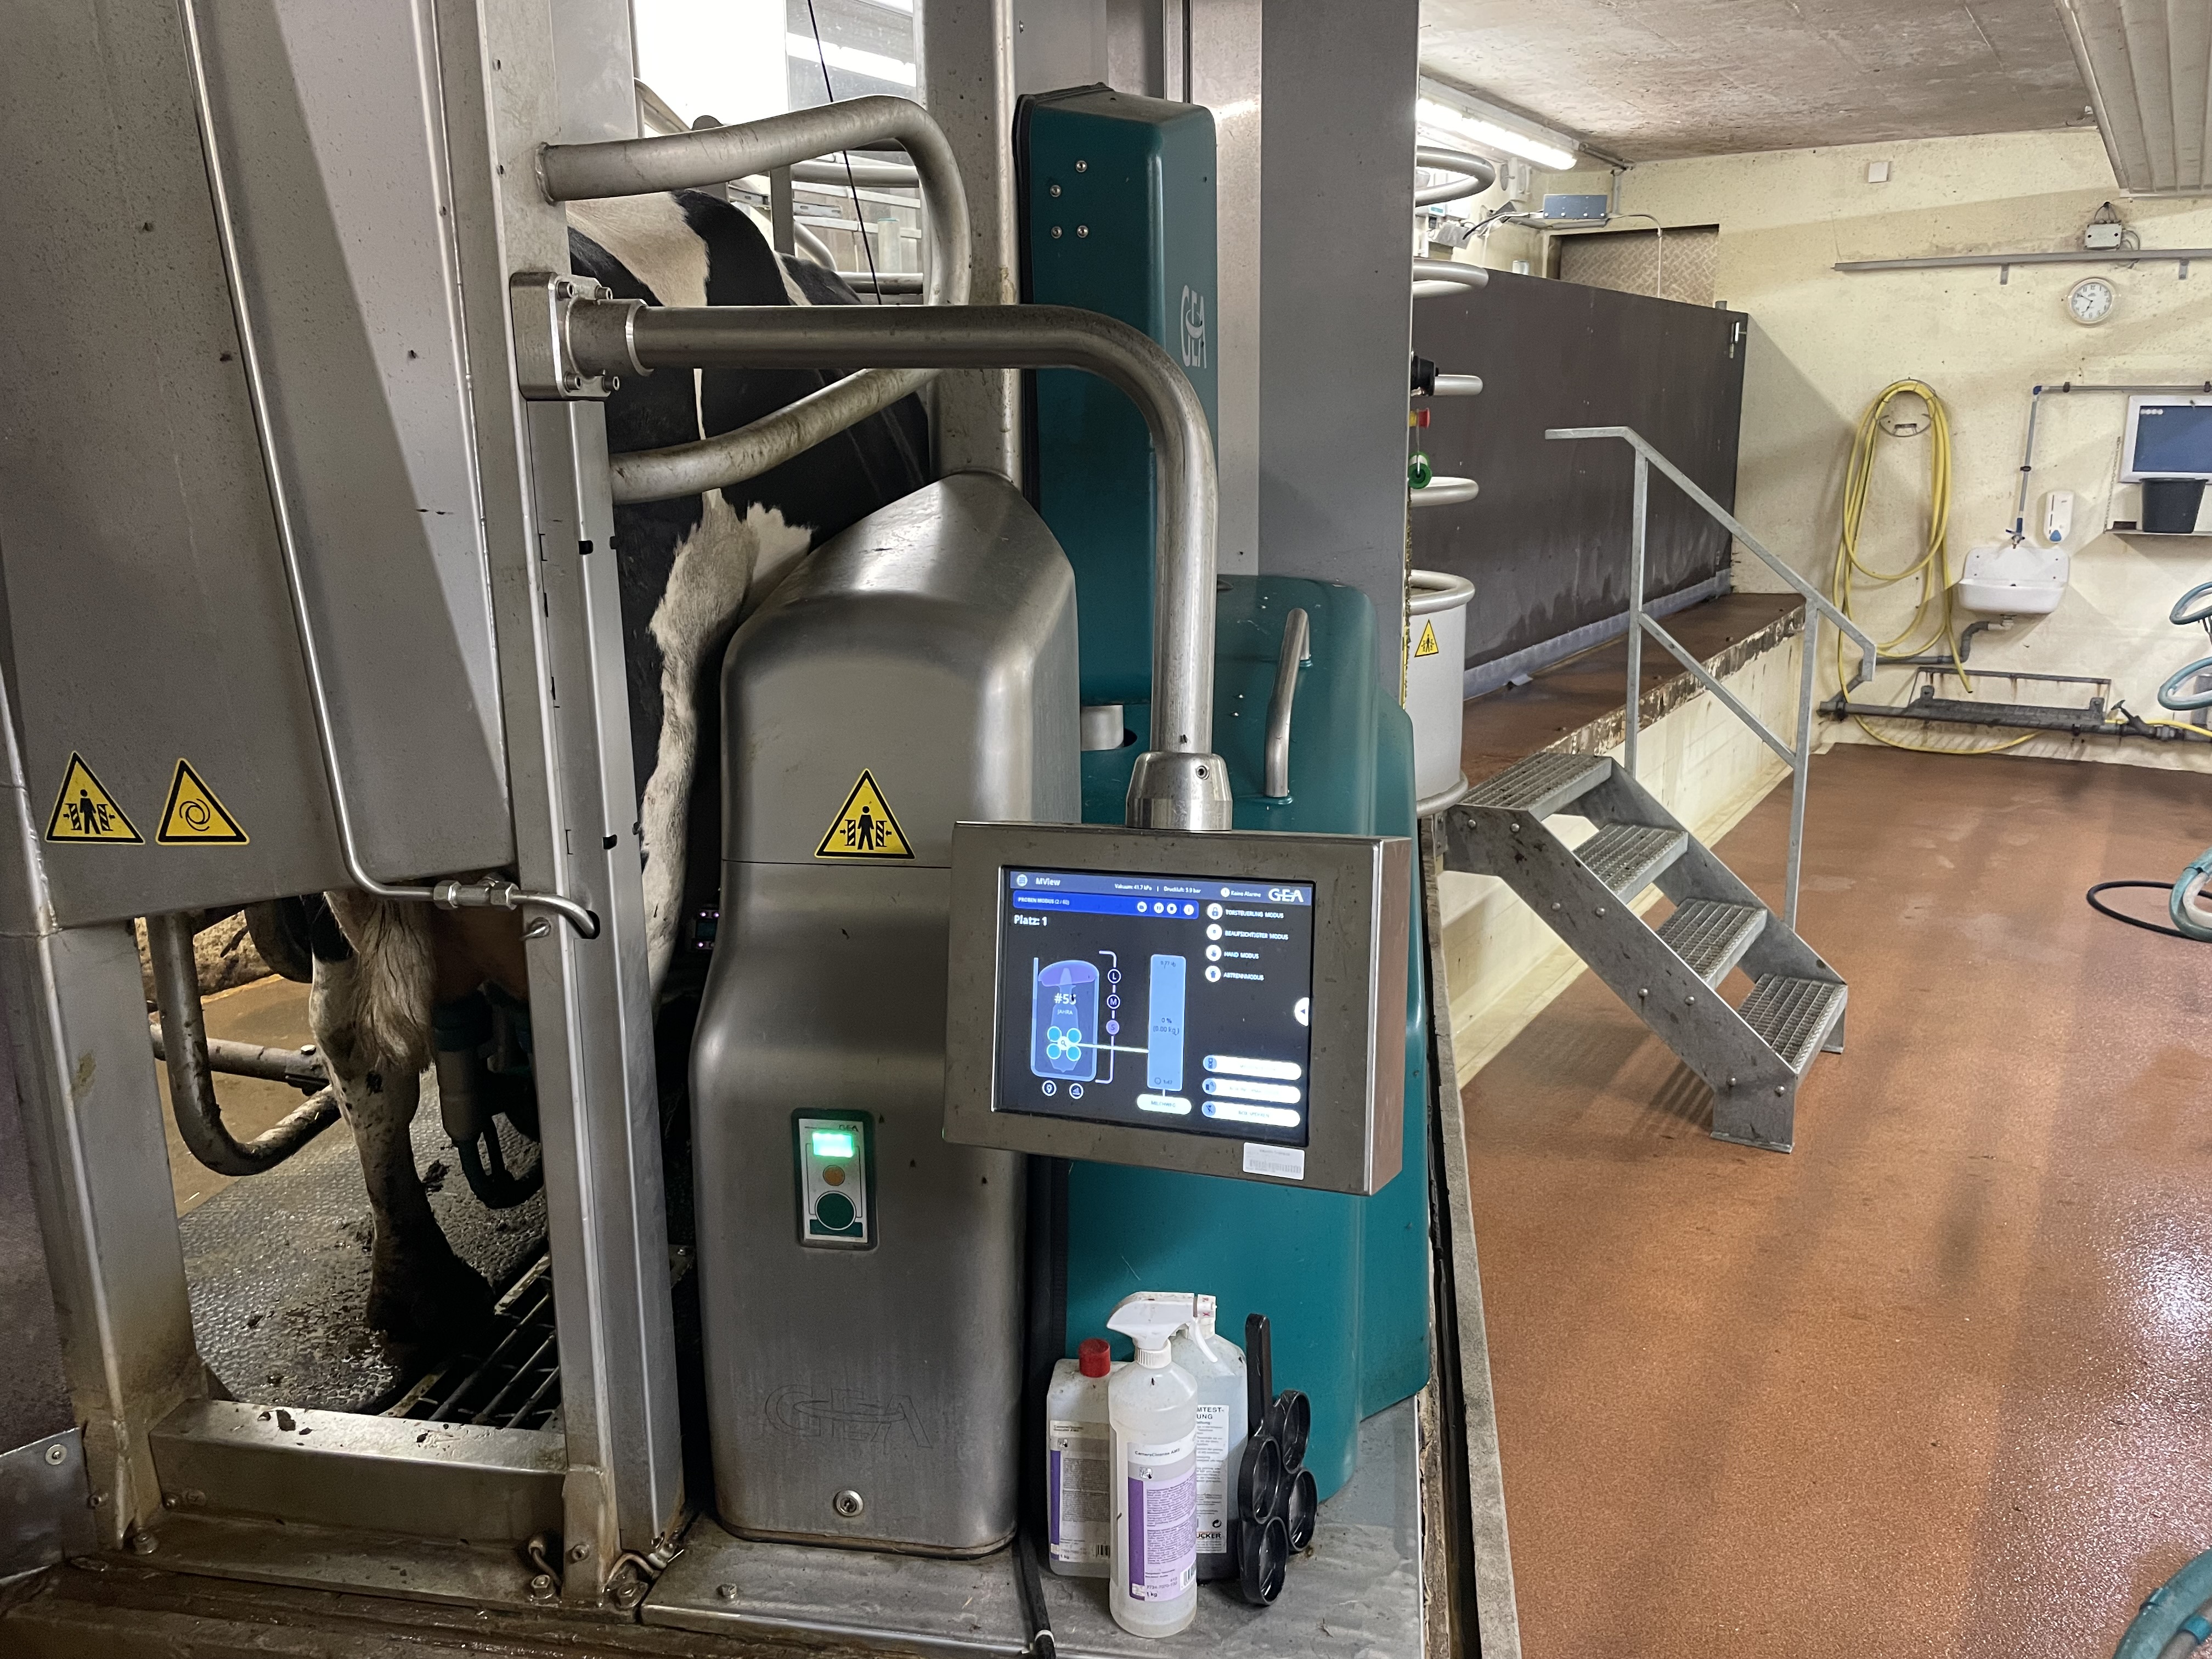 Das Bild zeigt eine Milchkuh, die gerade in einem automatischen Melksystem gemolken wird.